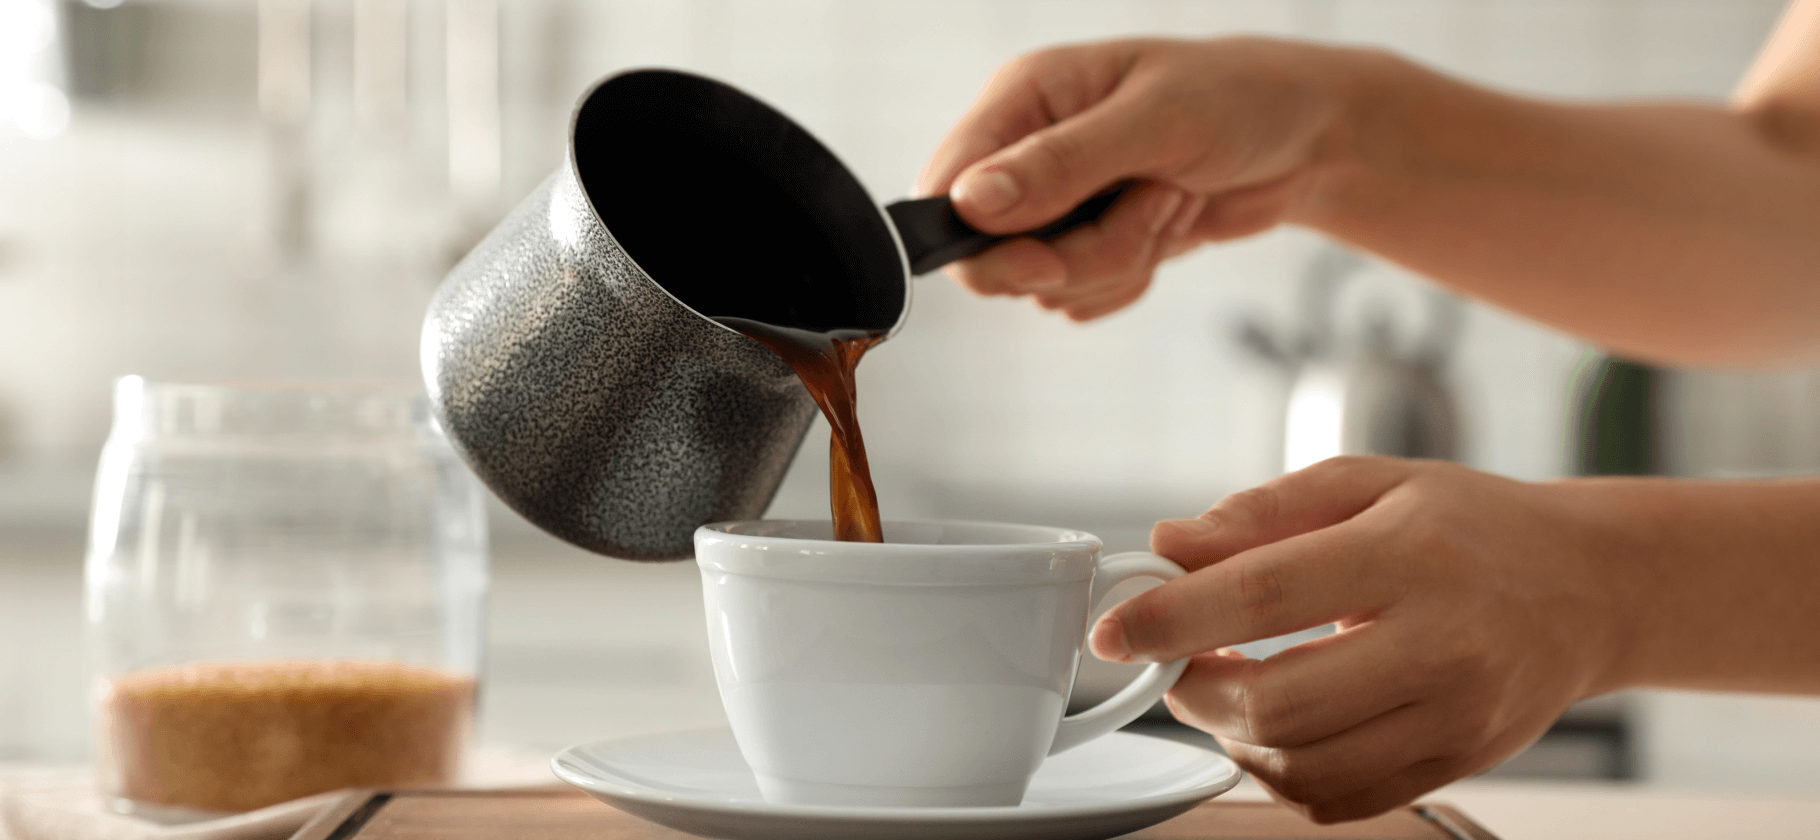 Не хуже, чем в кофейне: 8 недорогих предметов, чтобы приготовить кофе дома